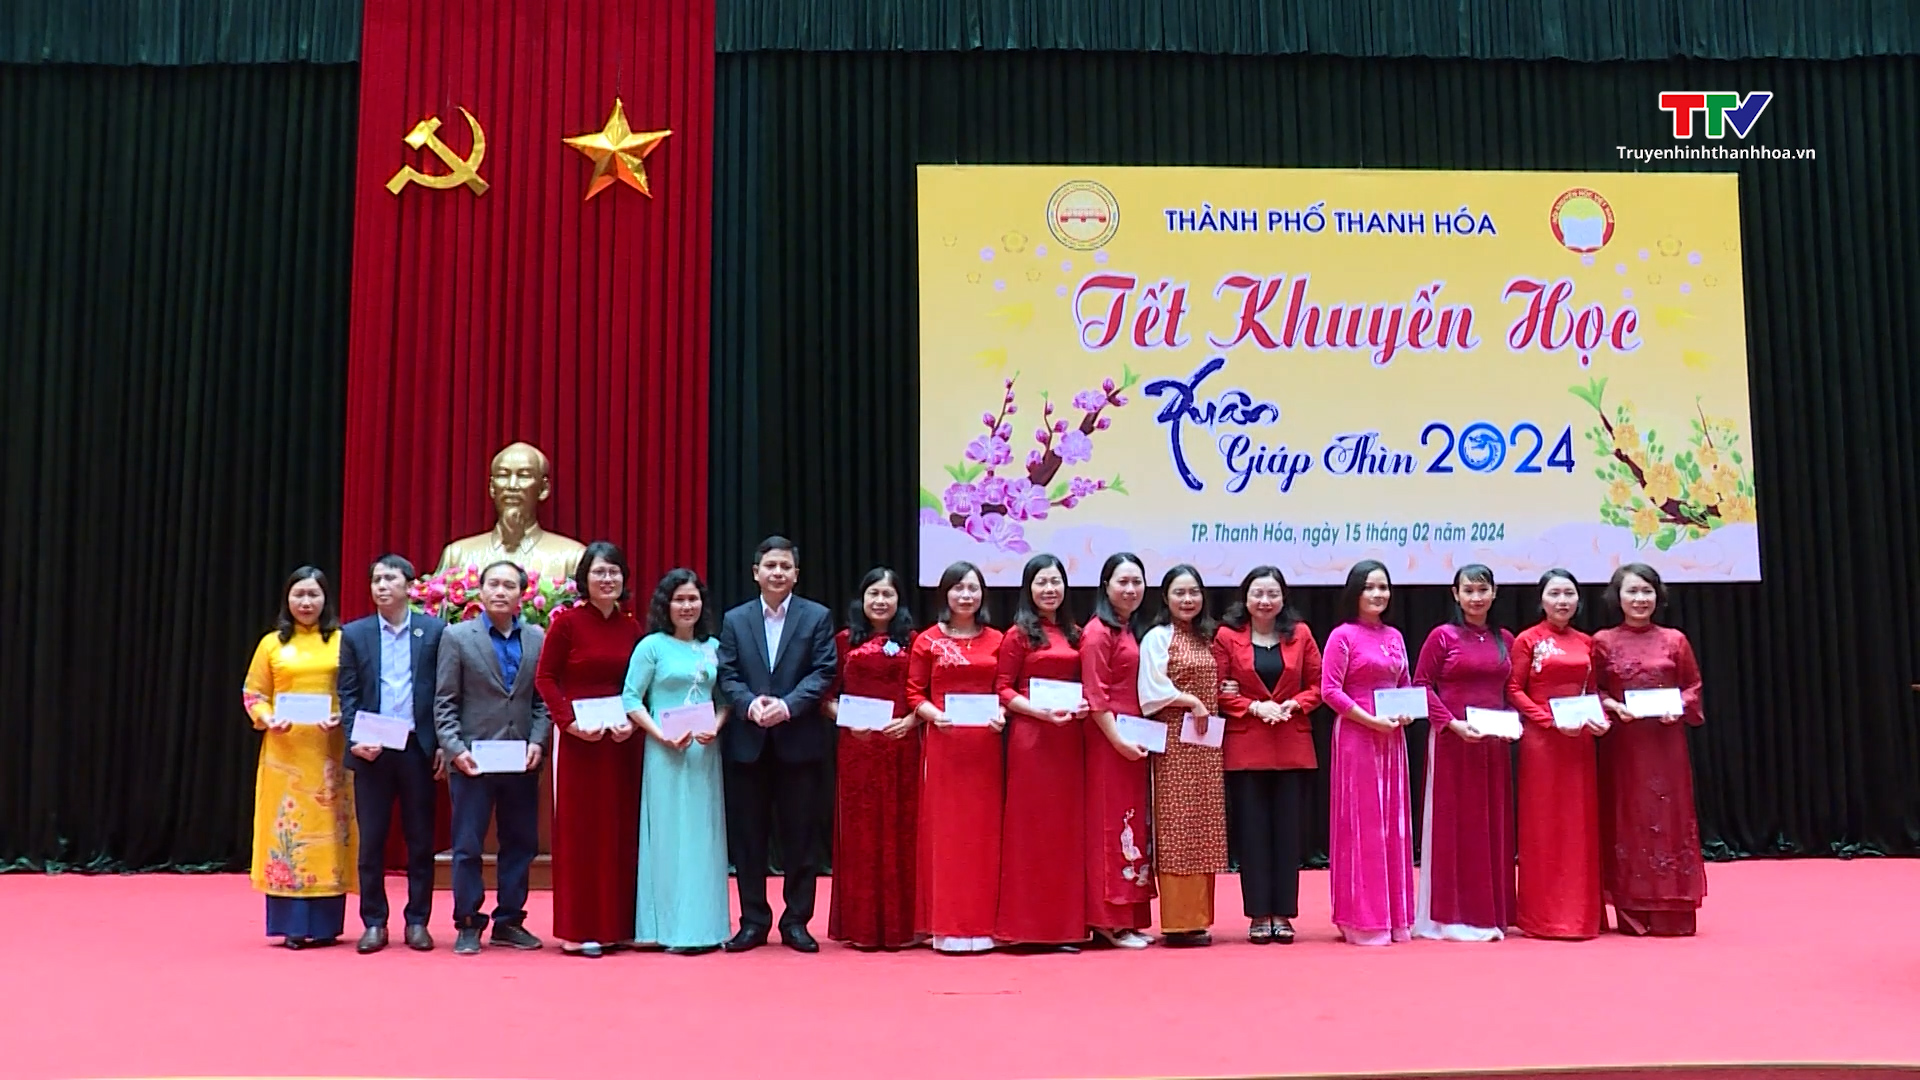 Thành phố Thanh Hóa tổ chức Tết khuyến học xuân Giáp Thìn 2024- Ảnh 2.